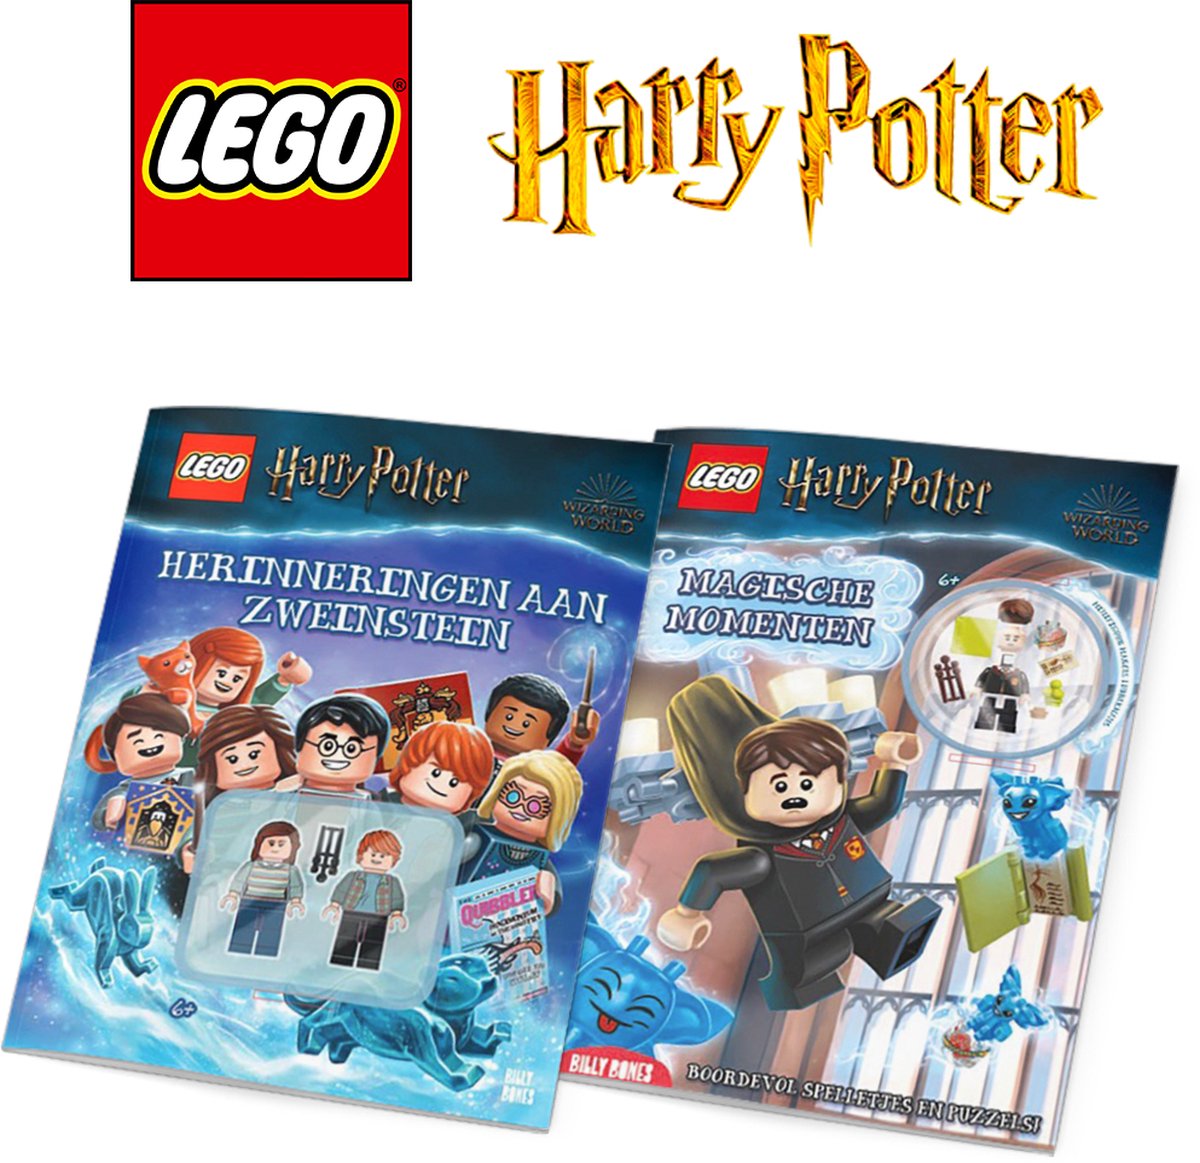 LEGO Harry Potter - Vakantieboek voor kinderen Voordeelbundel - 2 vakantie doeboeken met 3 LEGO poppetjes van Harry Potter - 6+ jaar